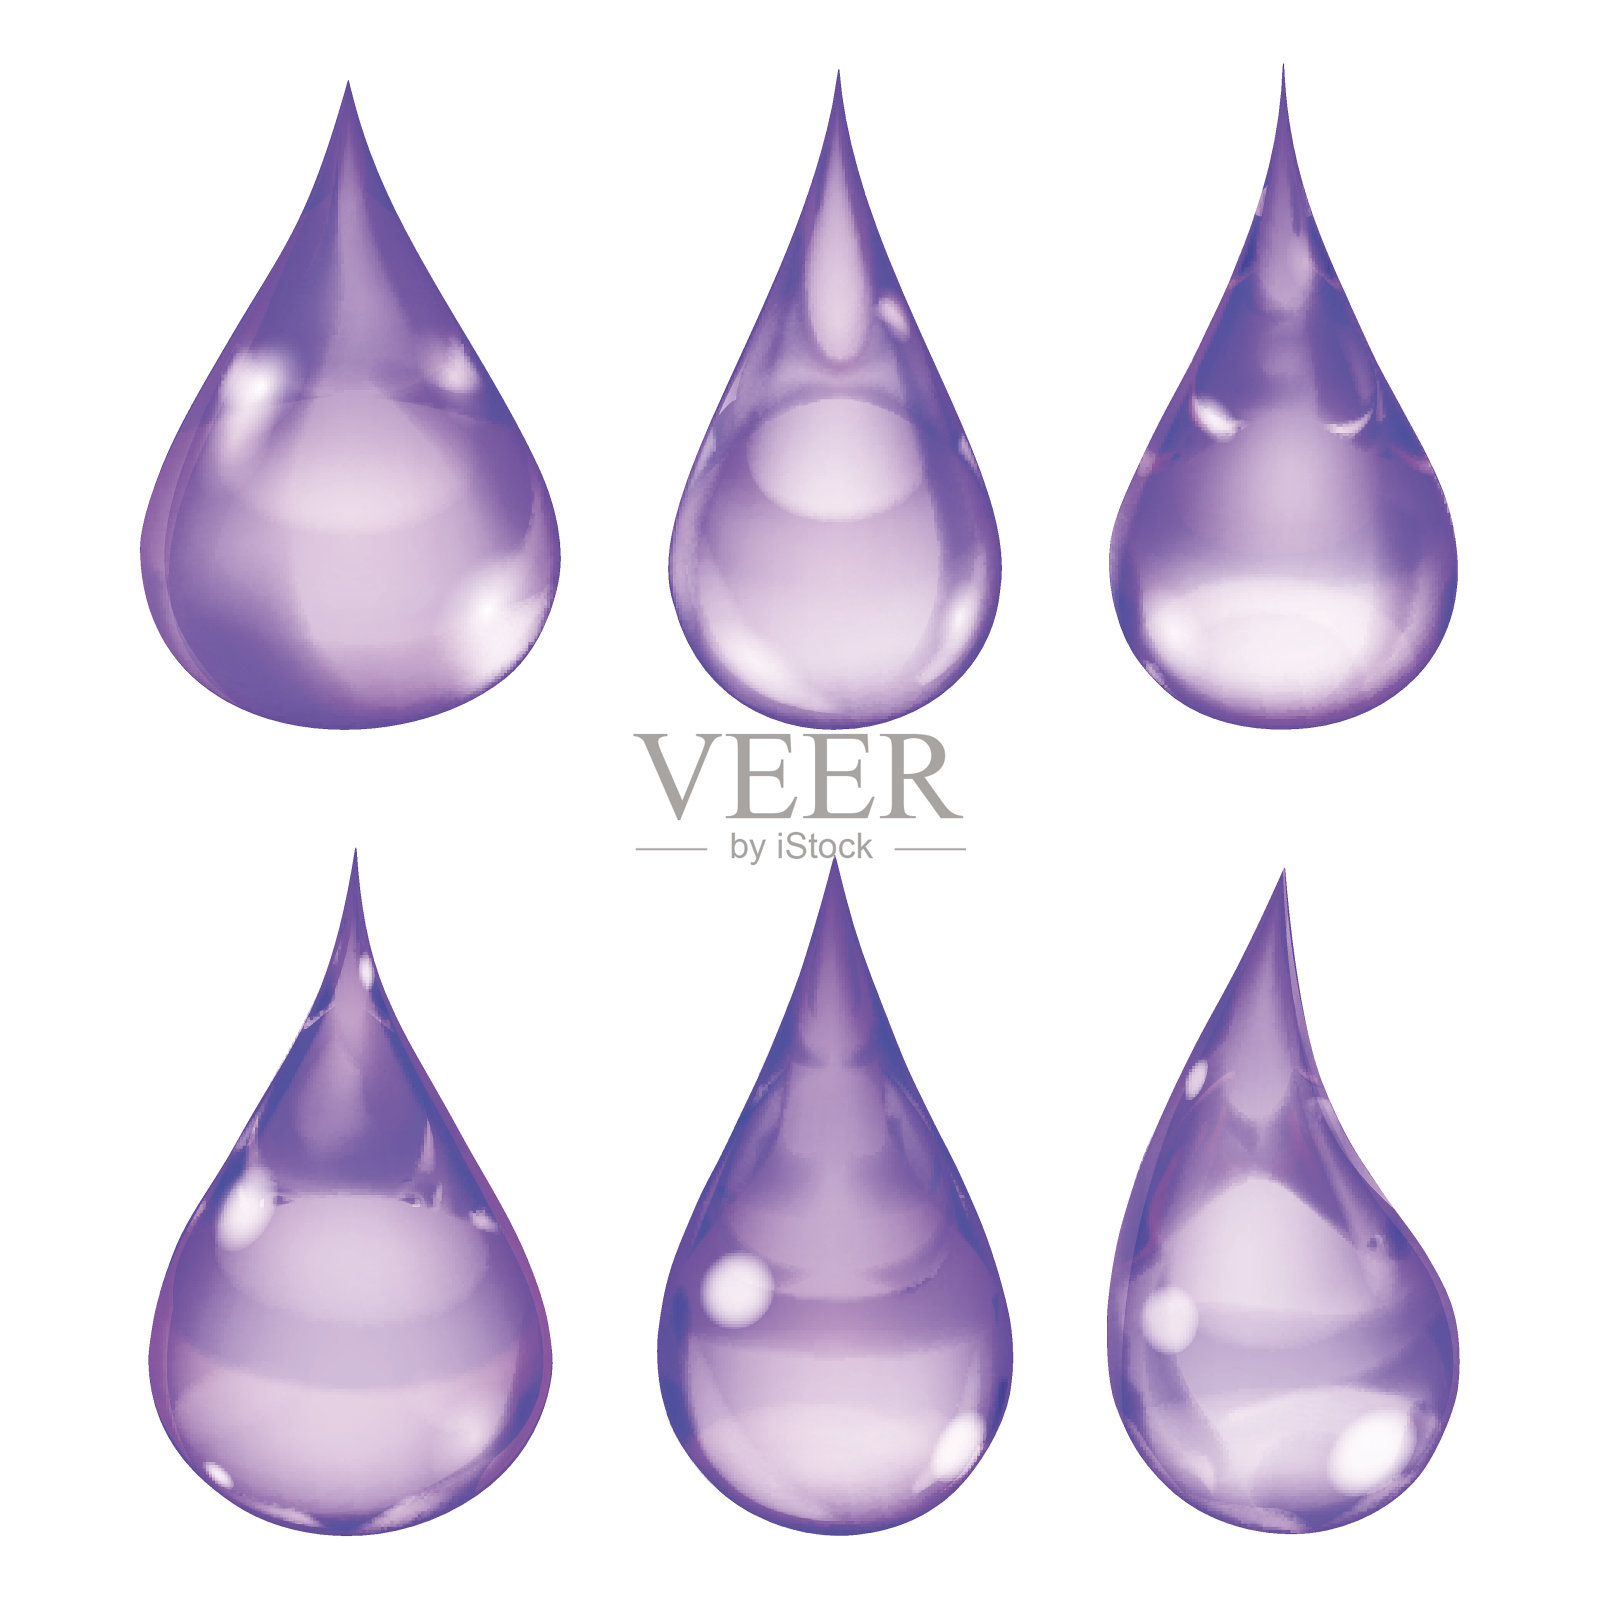 不透明的紫色滴设计元素图片